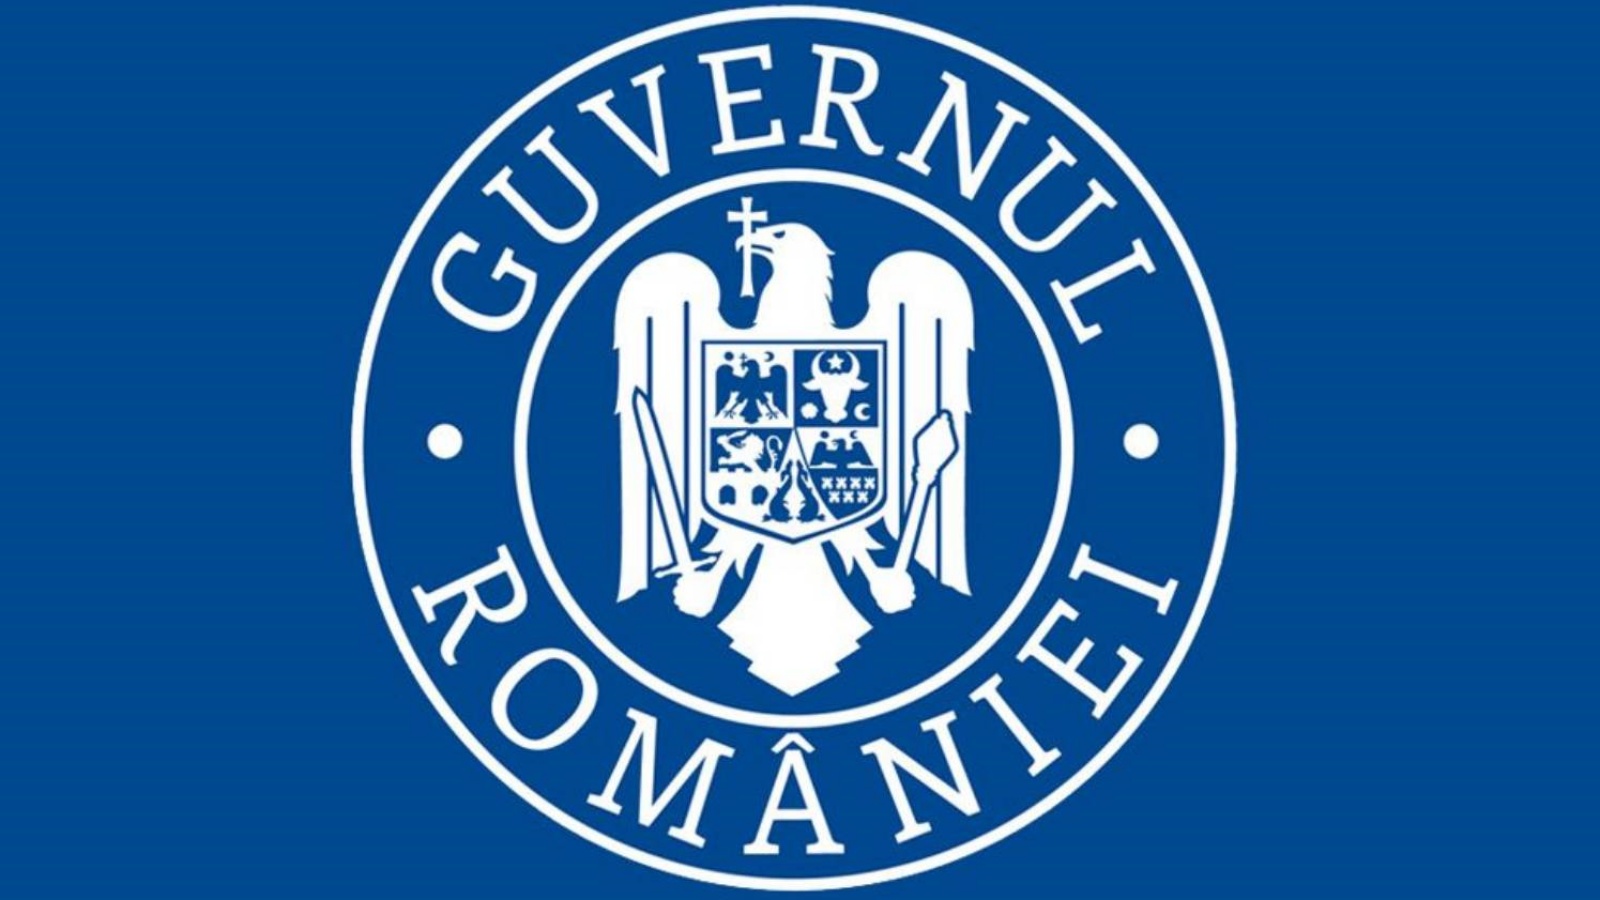 Romanian hallitus etsii ratkaisuja suojellakseen romanialaisia ​​hintojen nousun vaikutuksilta